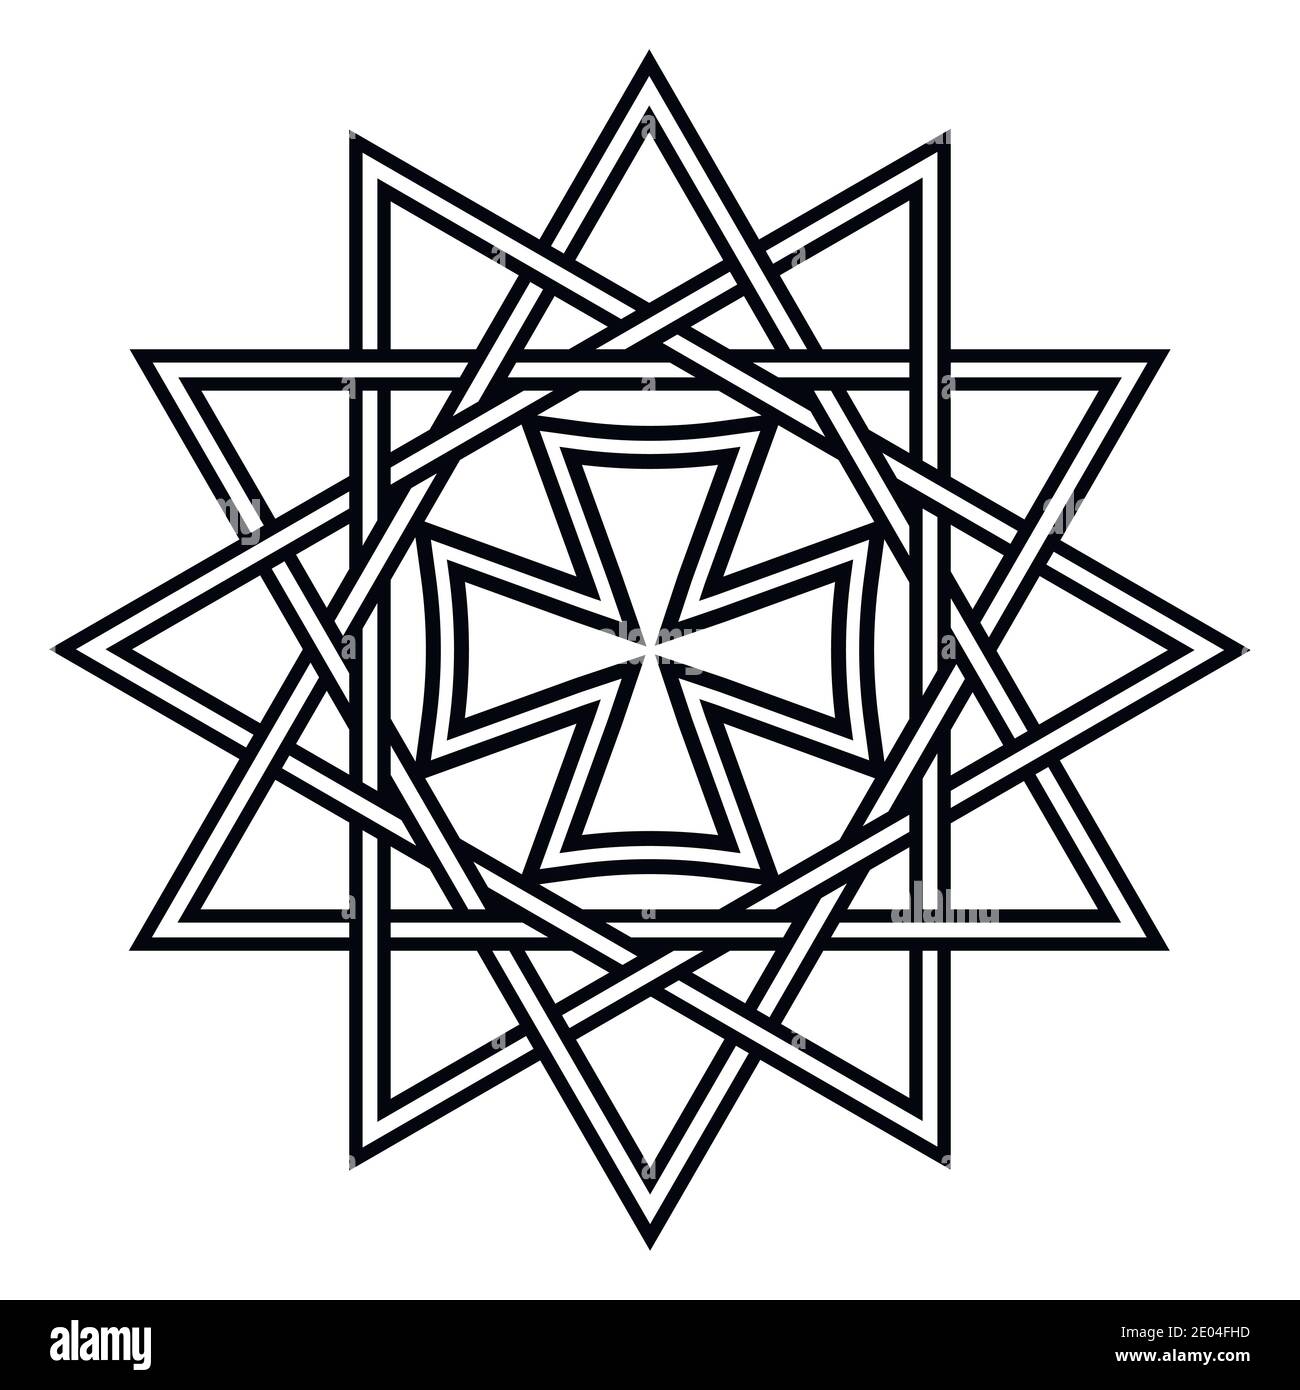 Stern Ertsgamma, Lucky 12 spitzen Stern Amulett alten christlichen Talisman religiösen Symbol, Vektor-Anhänger ertsgamma Talisman Stock Vektor